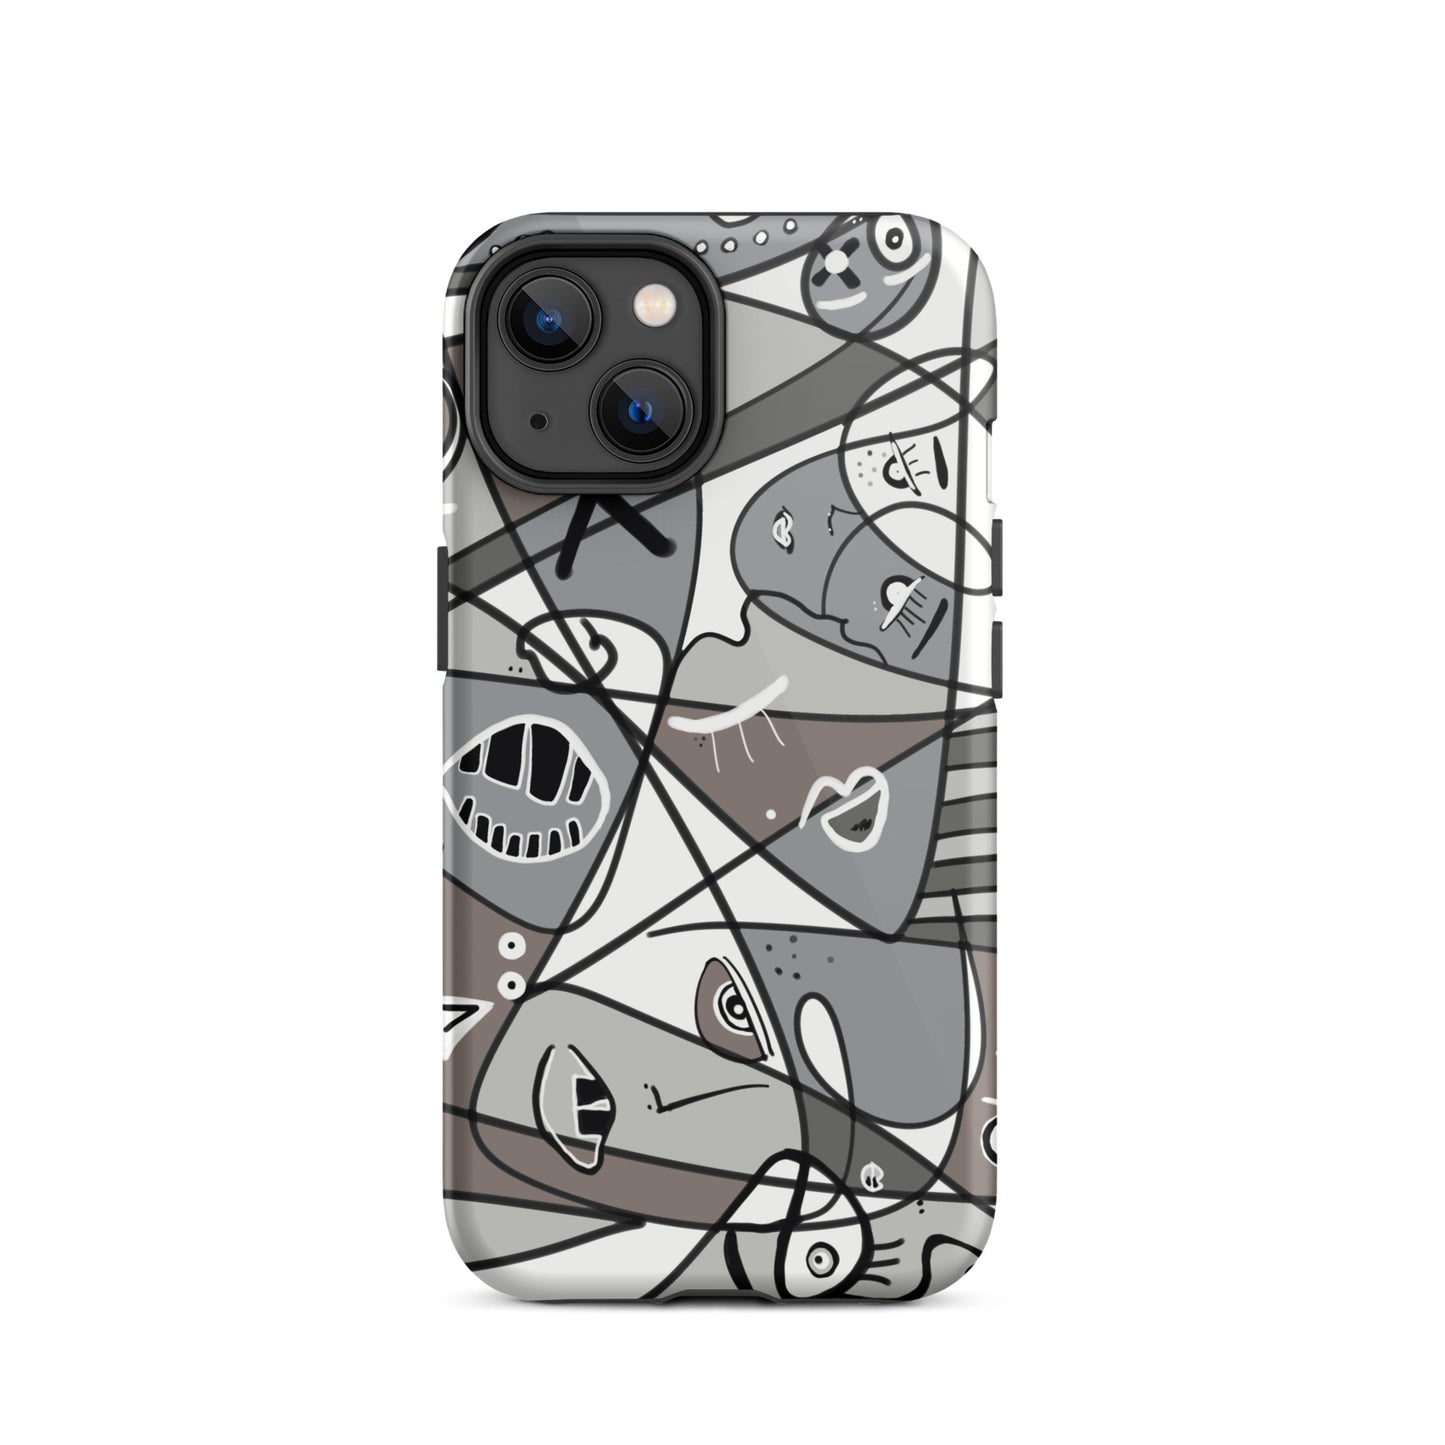 BW stylish iPhone case